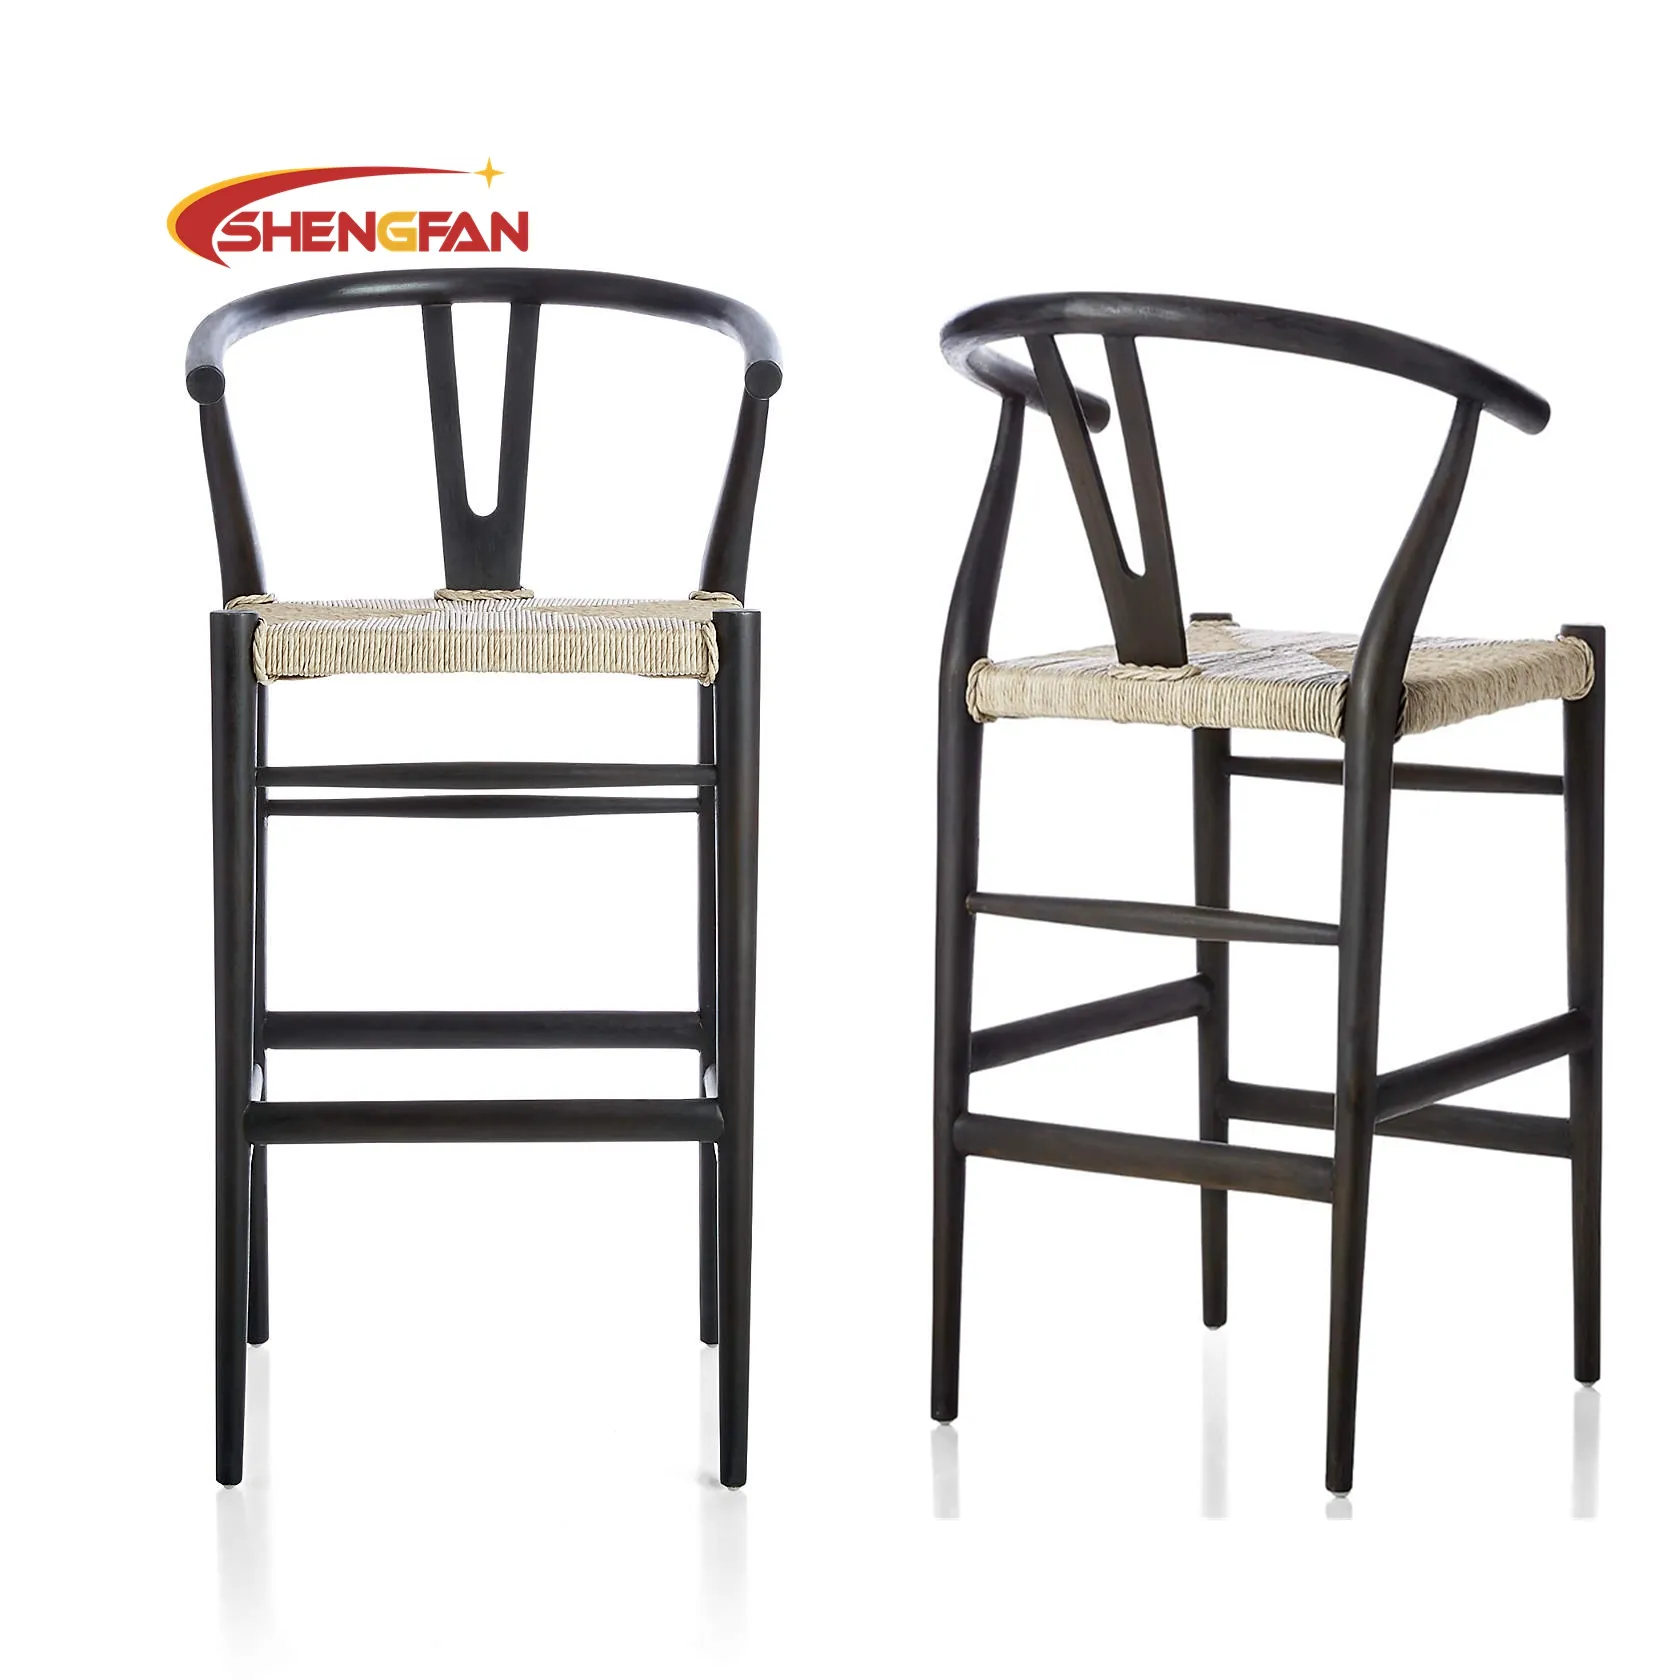 Cadeira de bar Whicker para cozinha, móveis de madeira maciça de design luxuoso, cor preta, cadeira de bar de madeira original